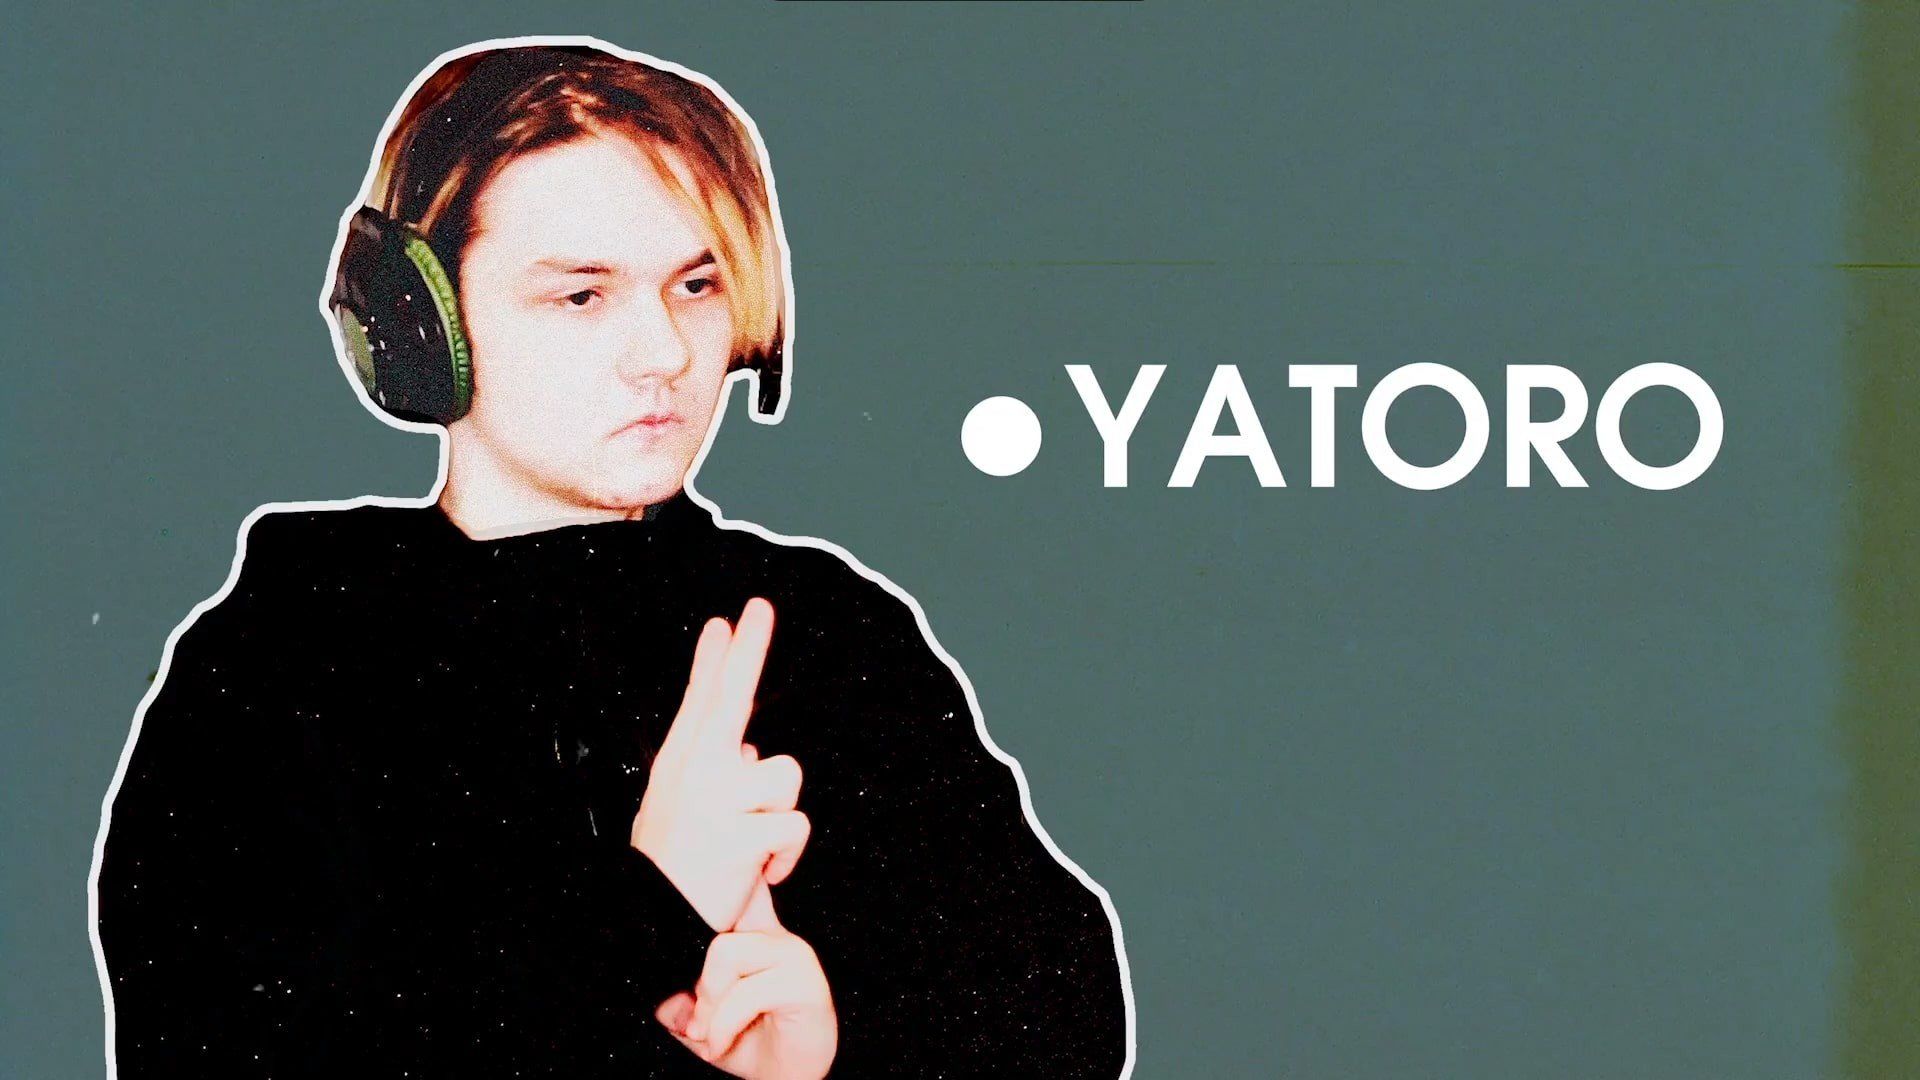 Аккаунт Yatoro из Team Spirit разбанили на Twitch